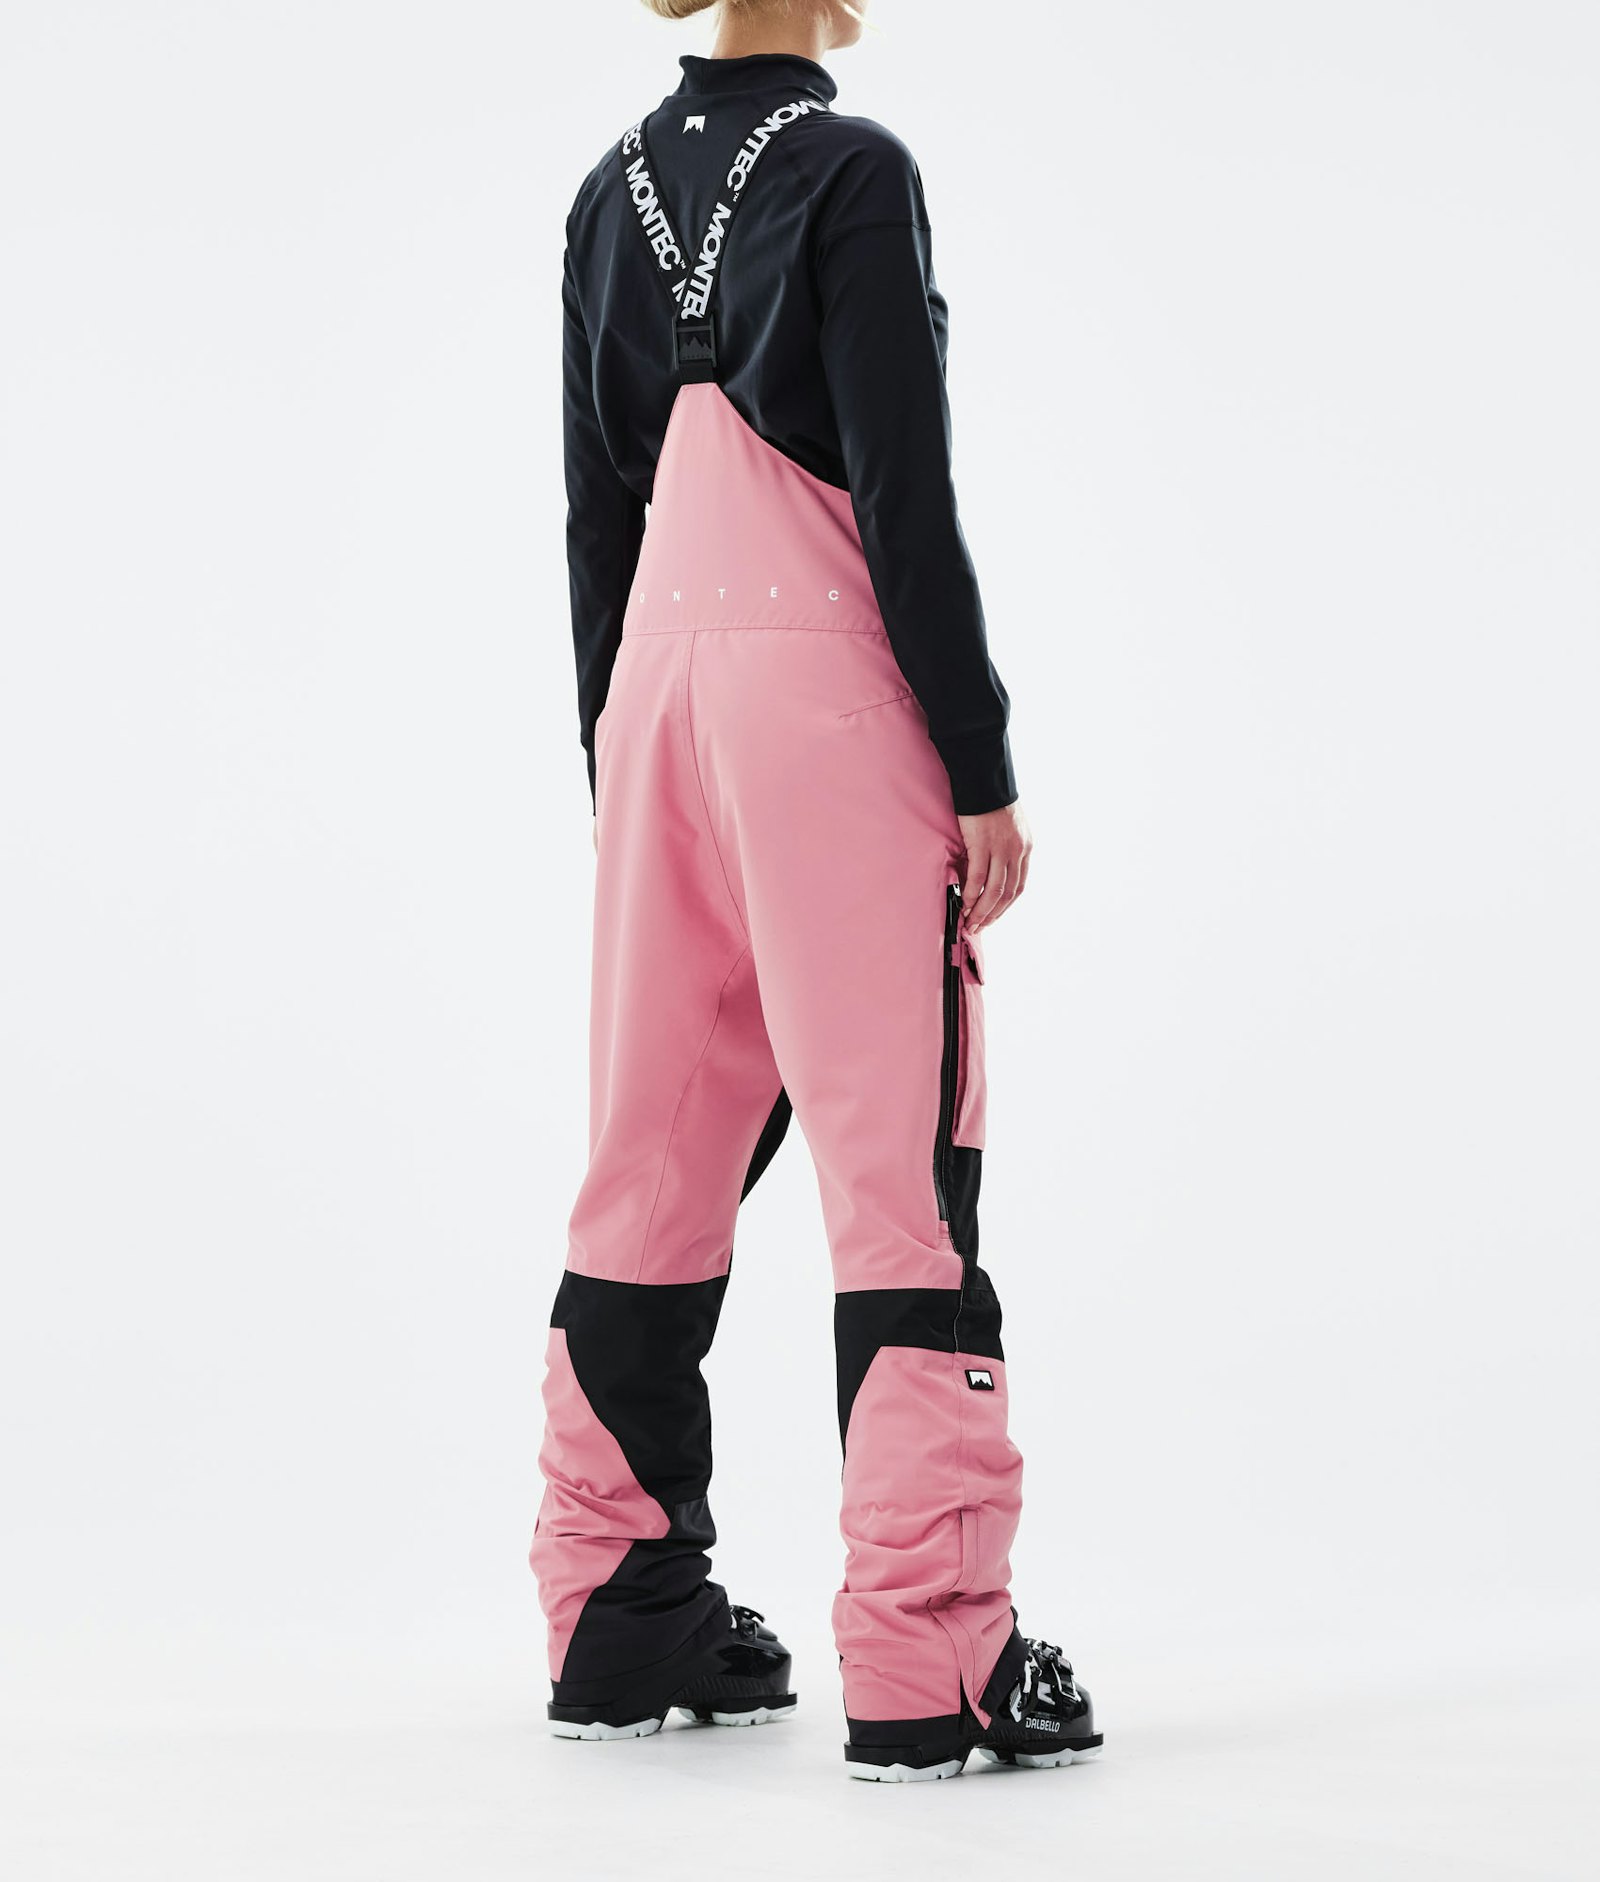 Fawk W 2021 Pantalon de Ski Femme Pink/Black